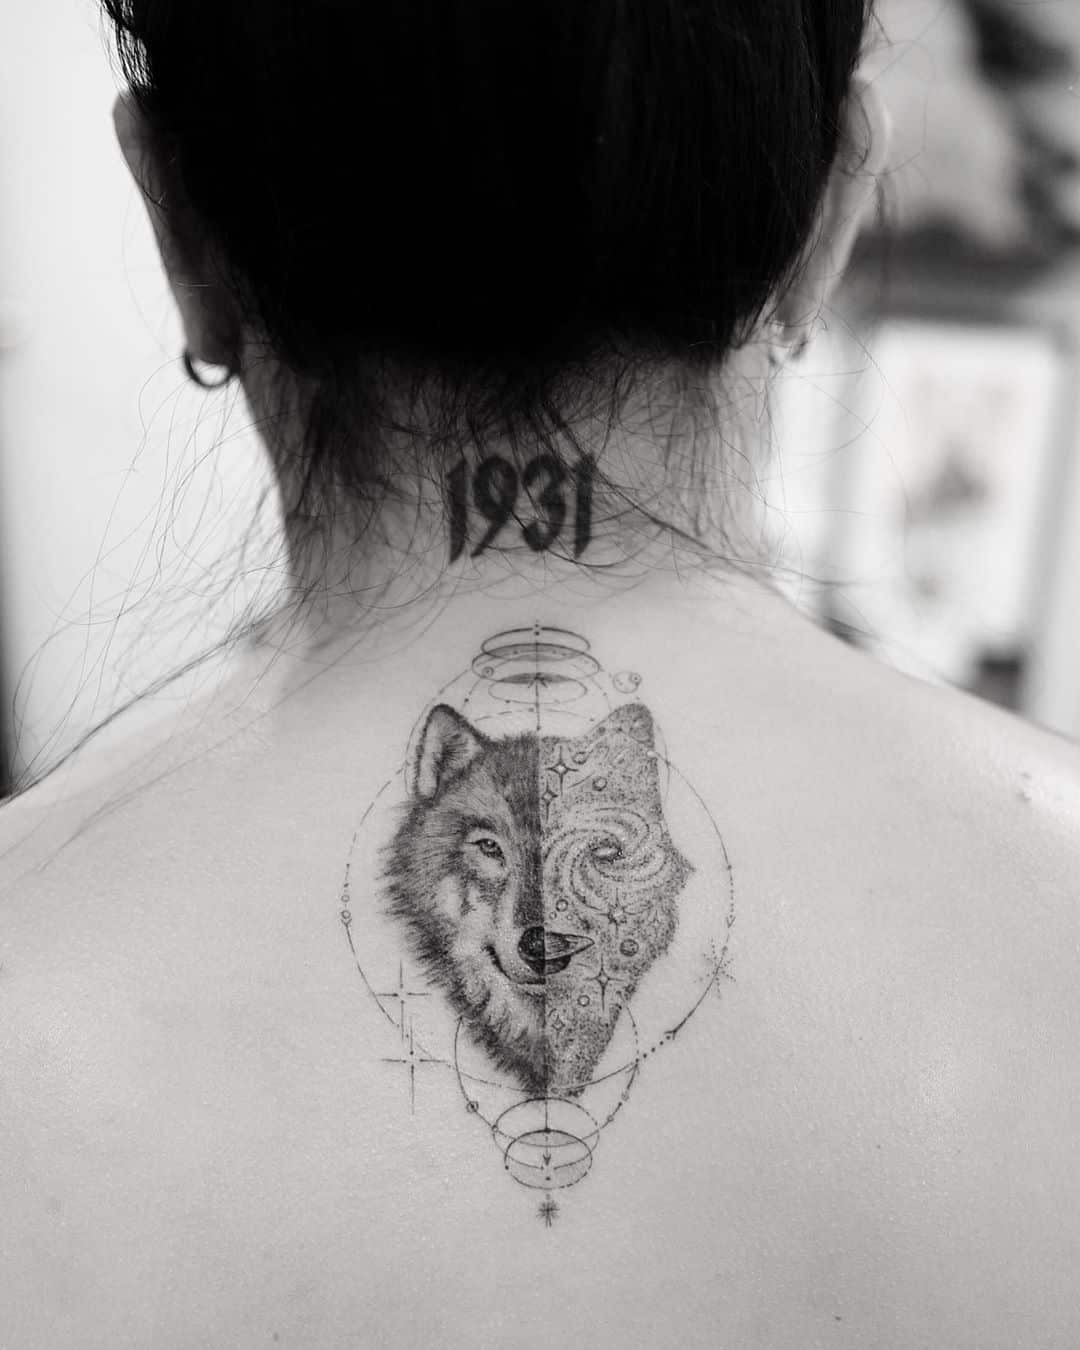 Tatuagem pontilhismo: 70 inspirações delicadas para te inspirar